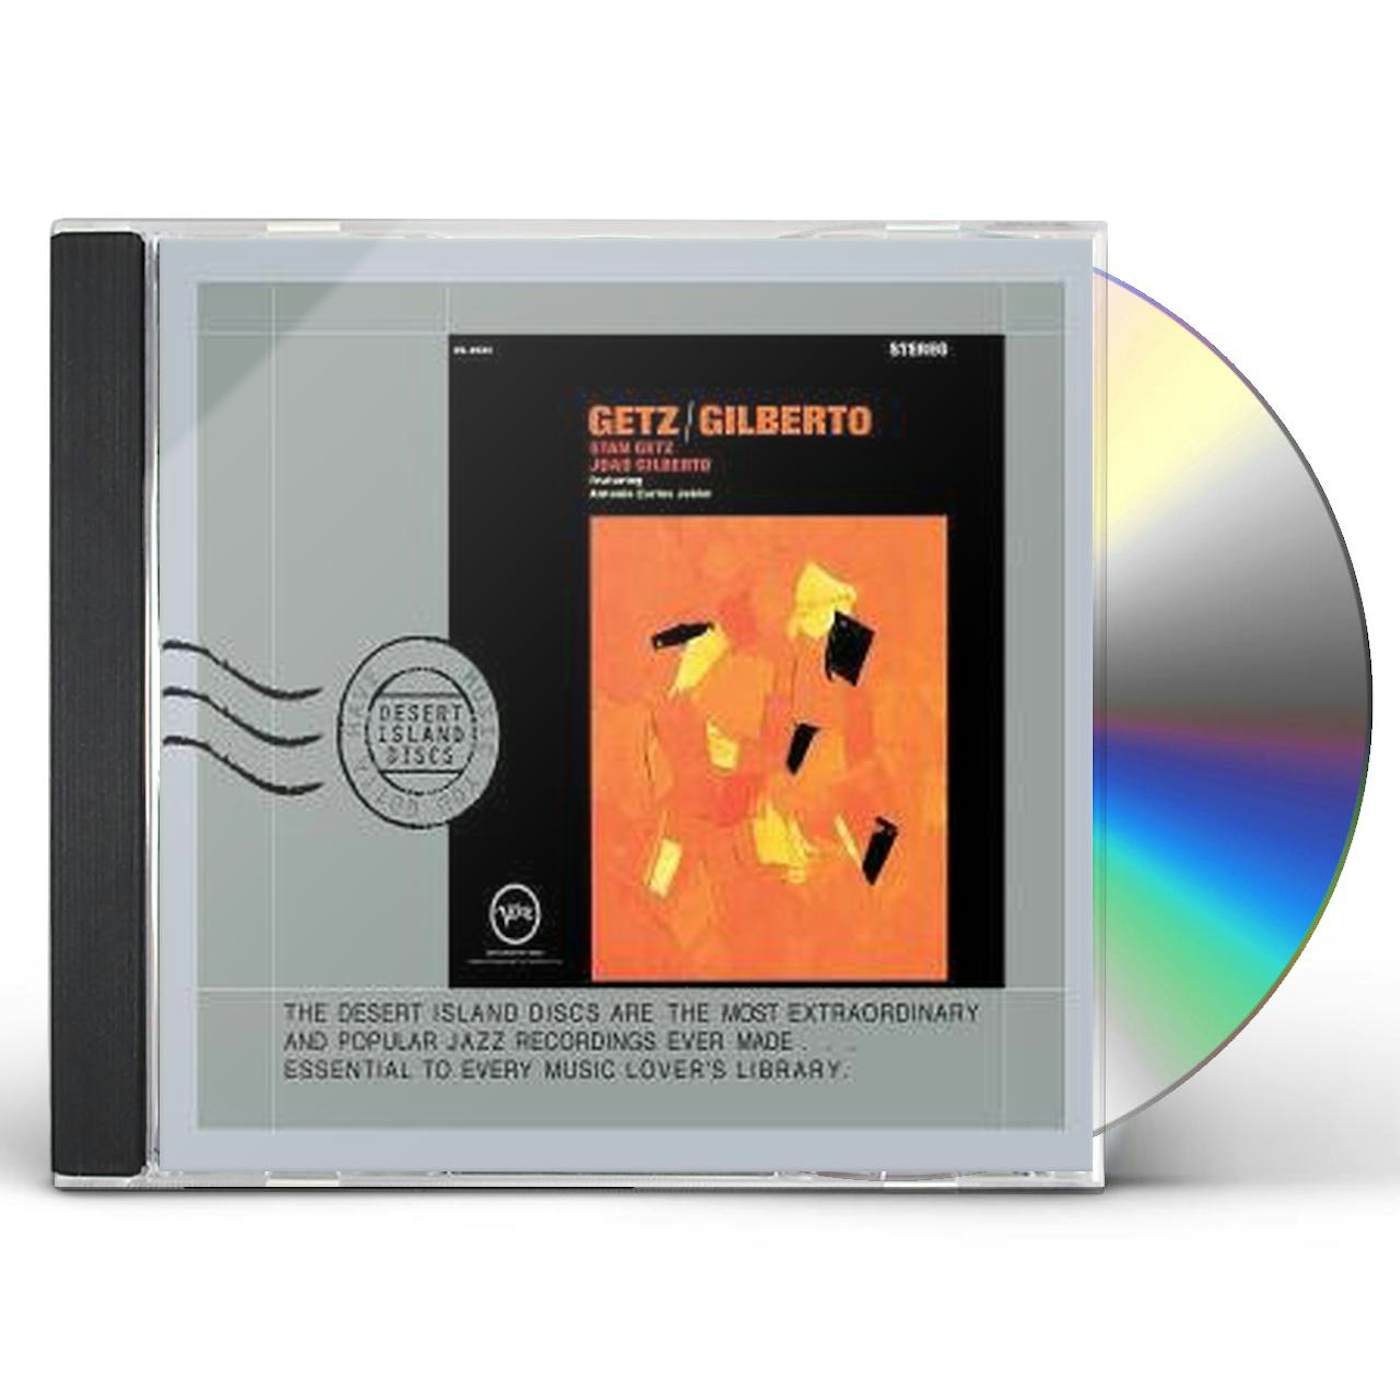 Stan Getz & Joao Gilberto GETZ / GILBERTO CD